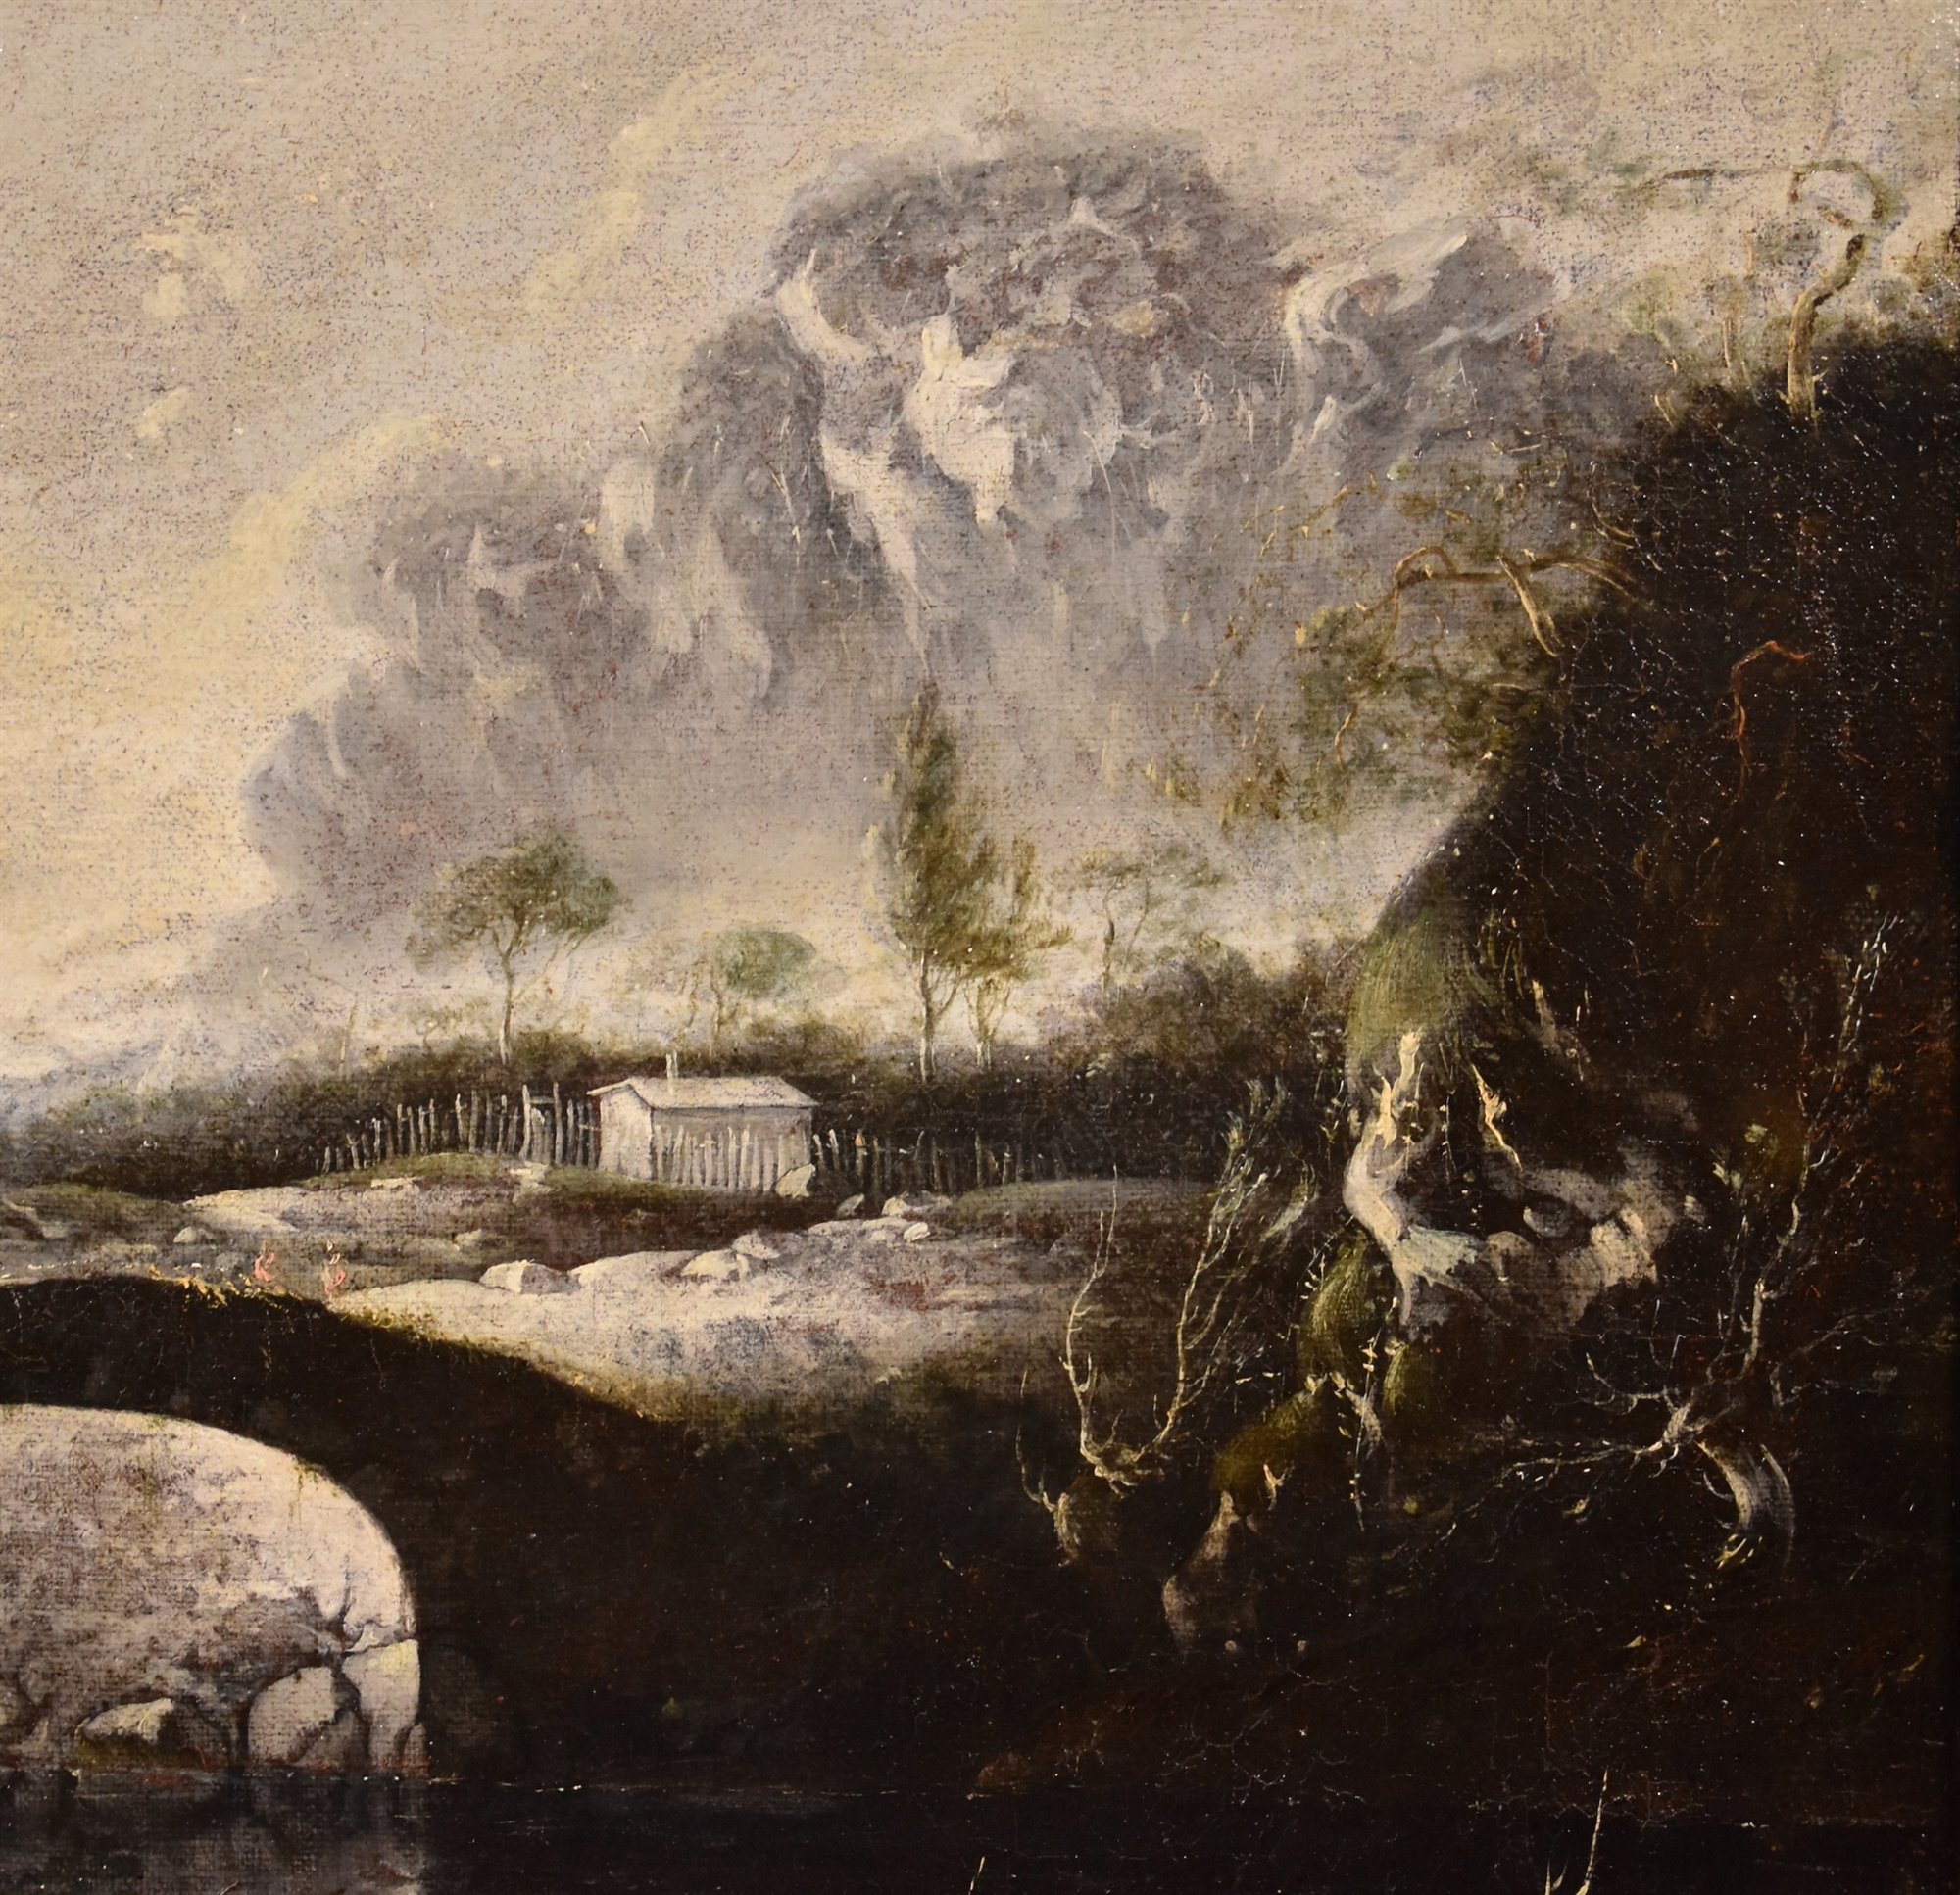 Paesaggio invernale di fantasia con ponte e torrione